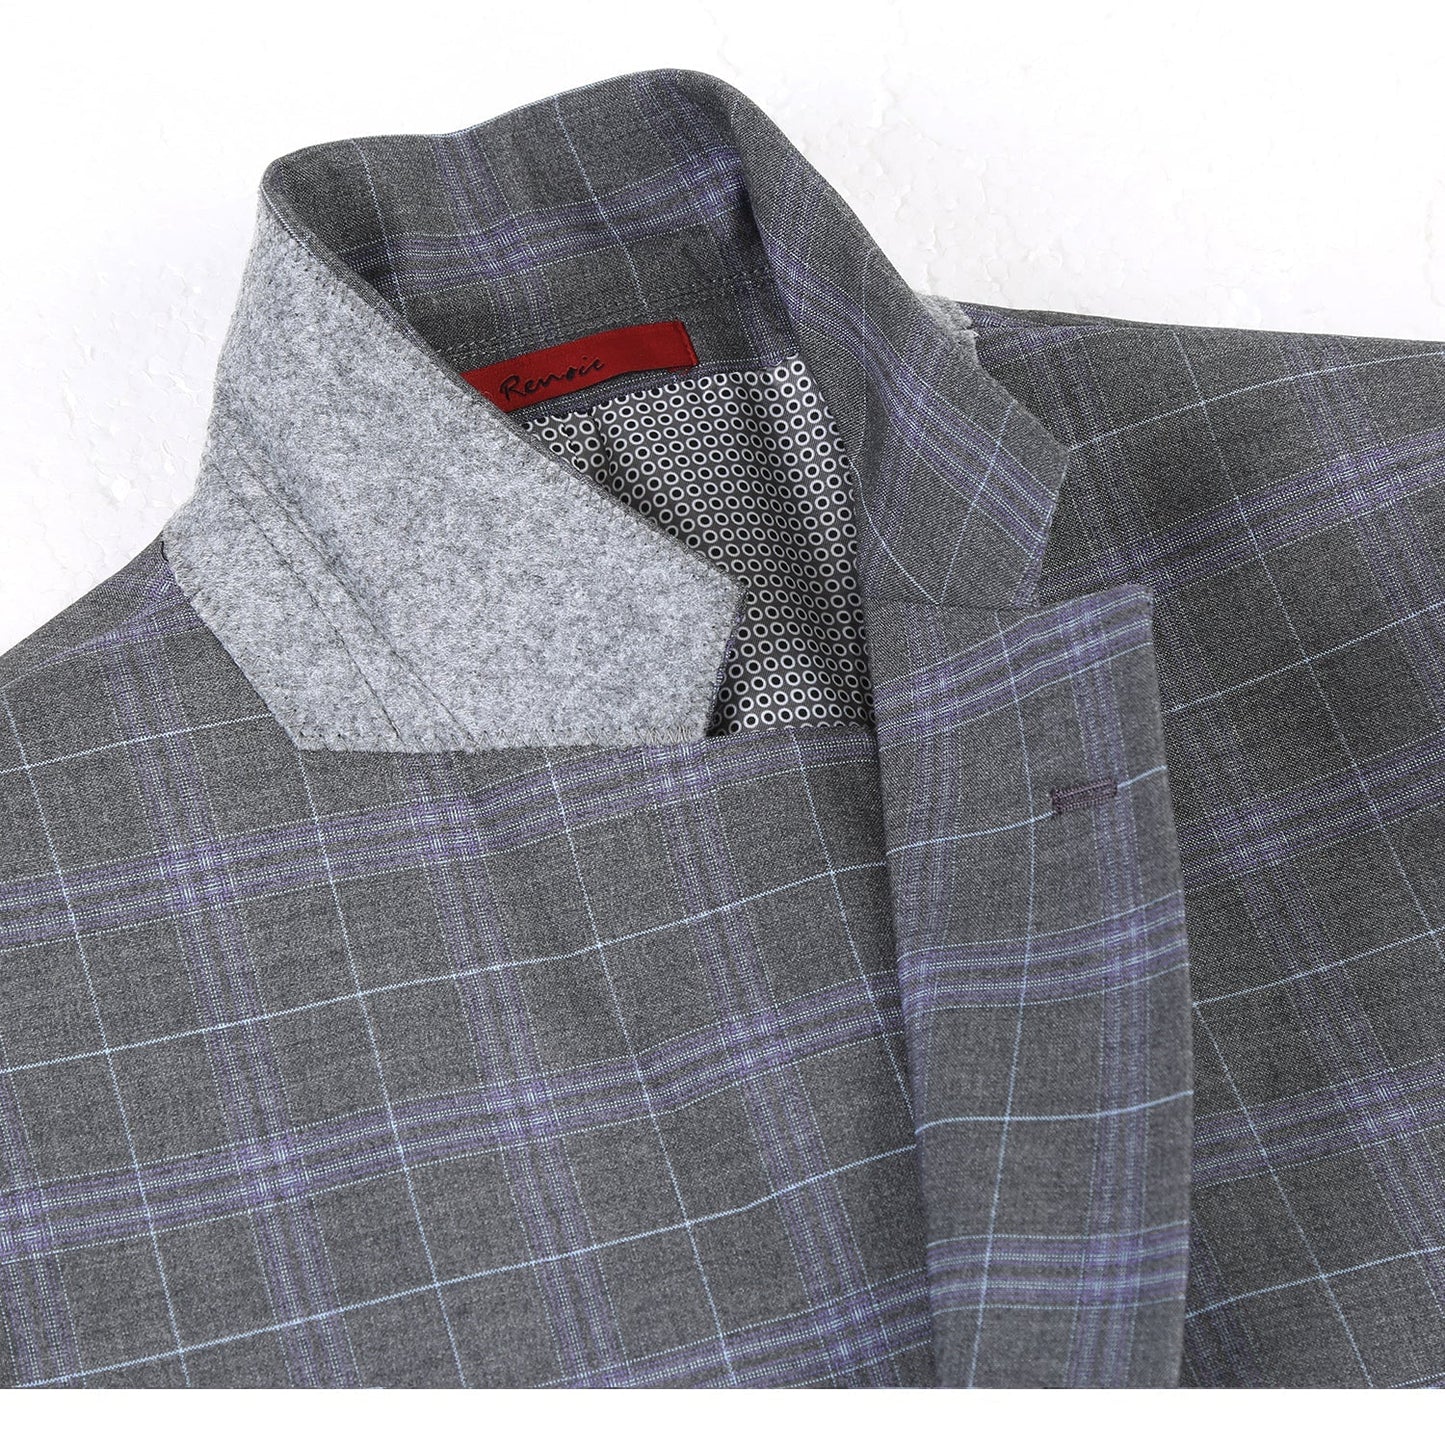 293-25 Men's Classic Fit Grey and Lavender Plaid Suit